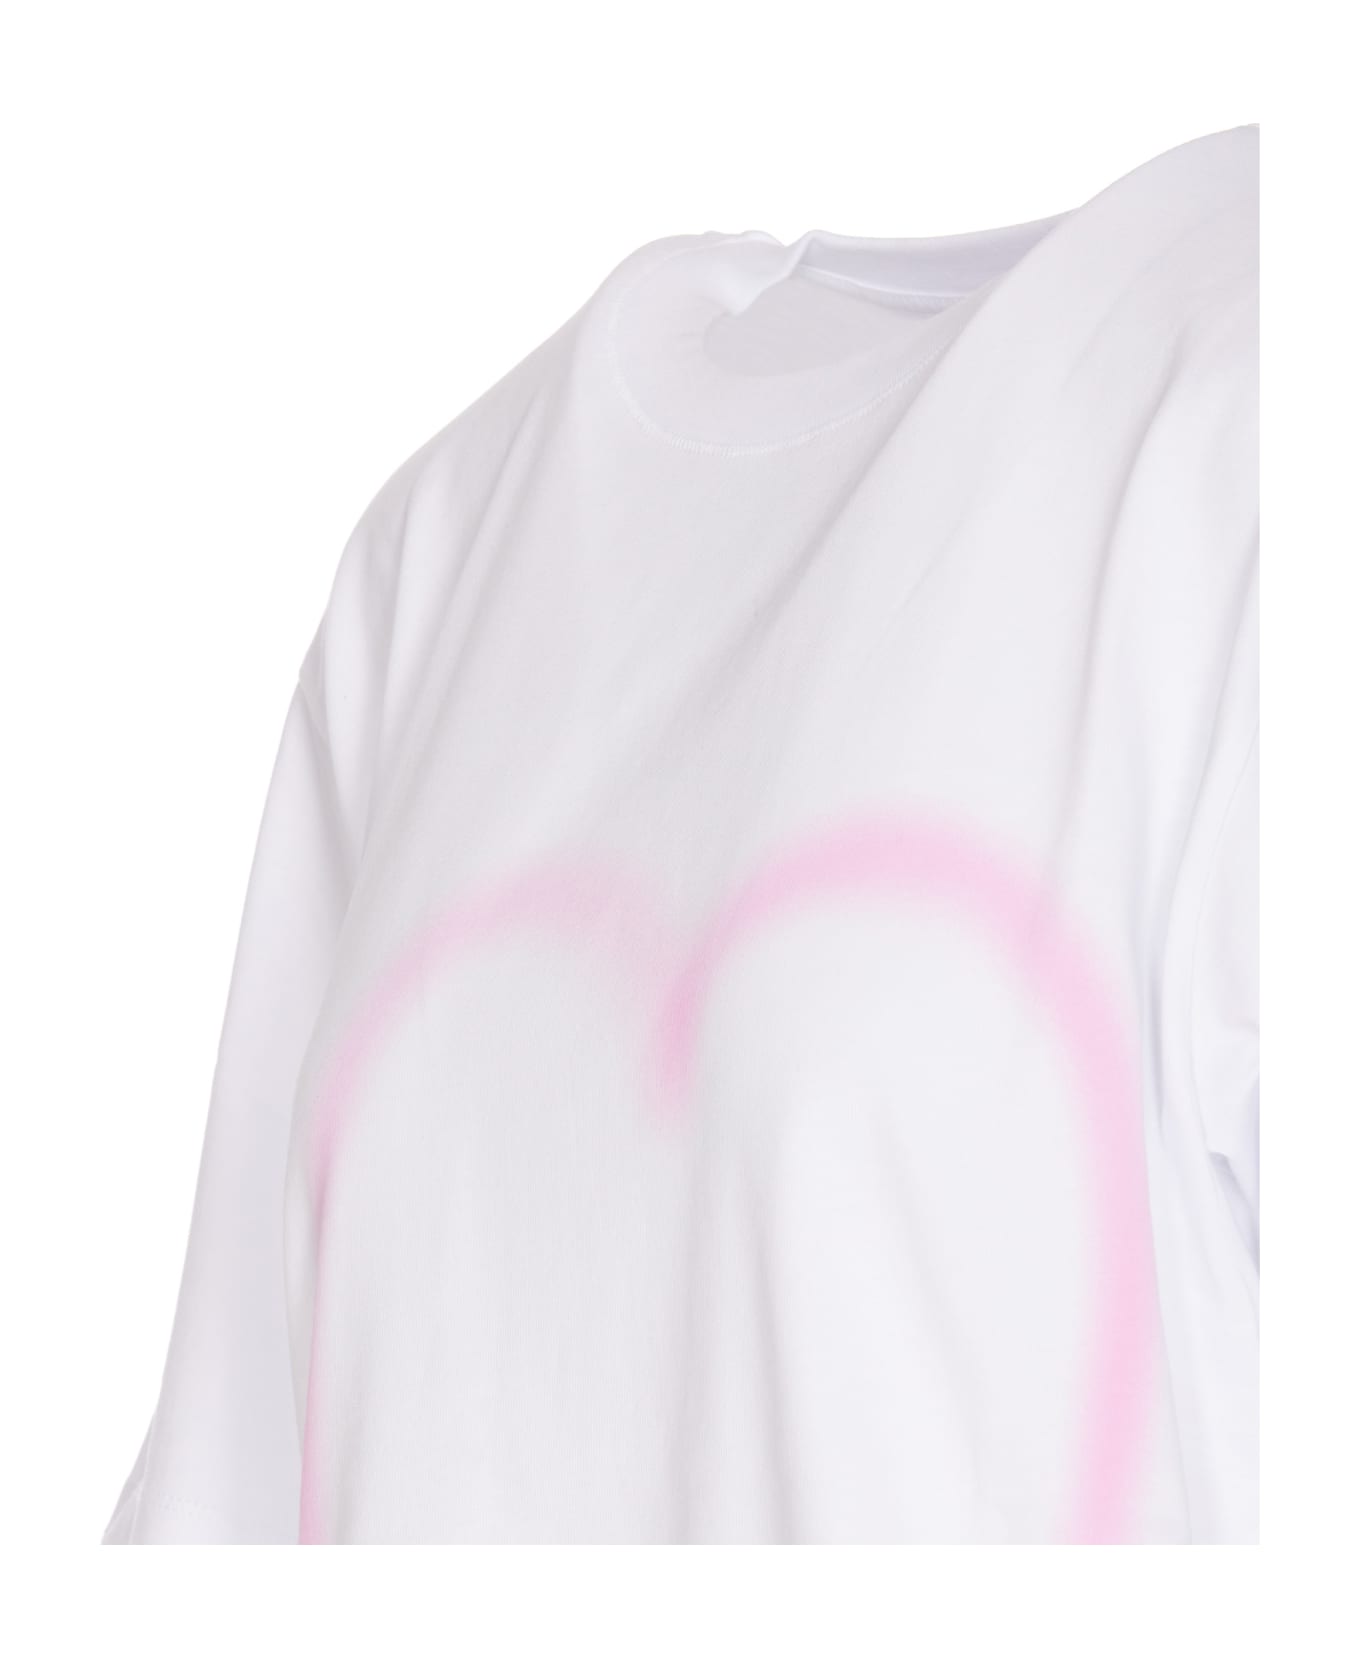 SportMax Jersey Cotton Print T-shirt - White Tシャツ